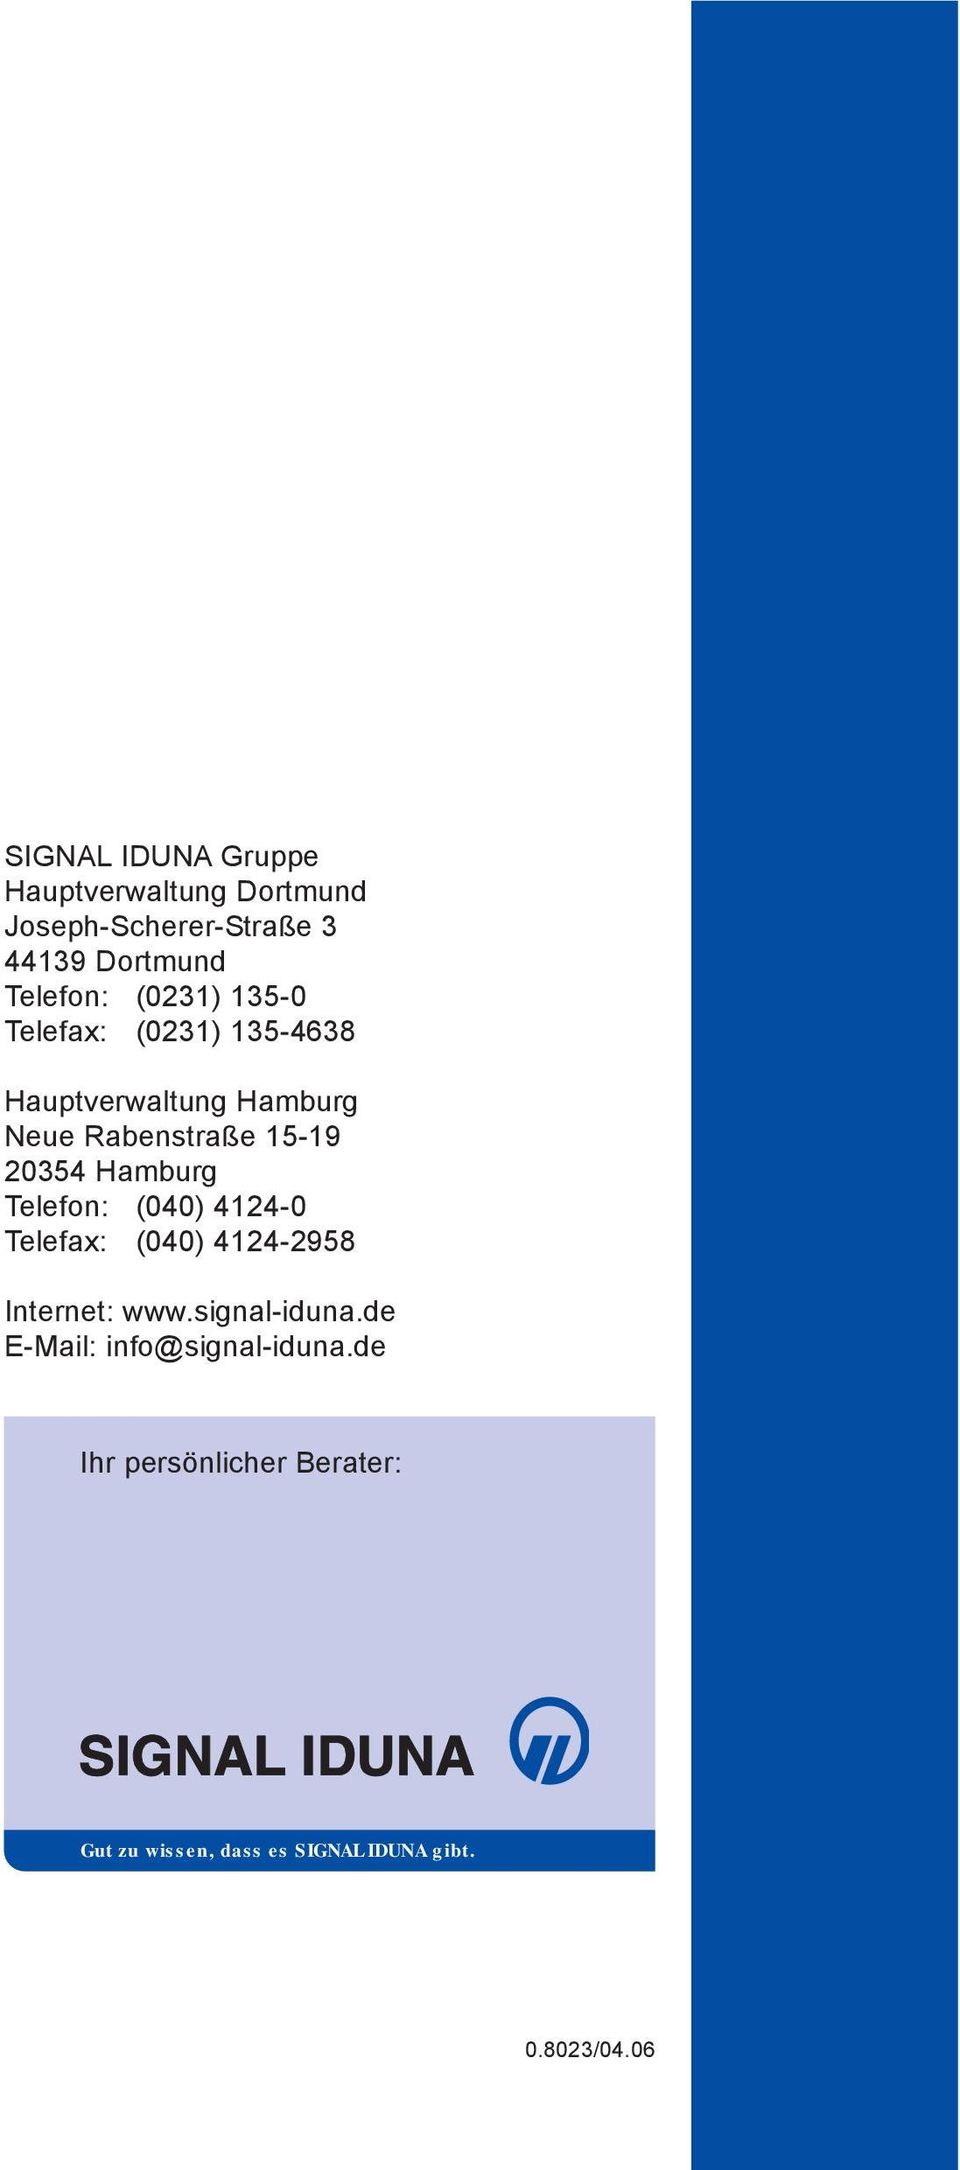 Hamburg Telefon: (040) 4124-0 Telefax: (040) 4124-2958 Internet: www.signal-iduna.